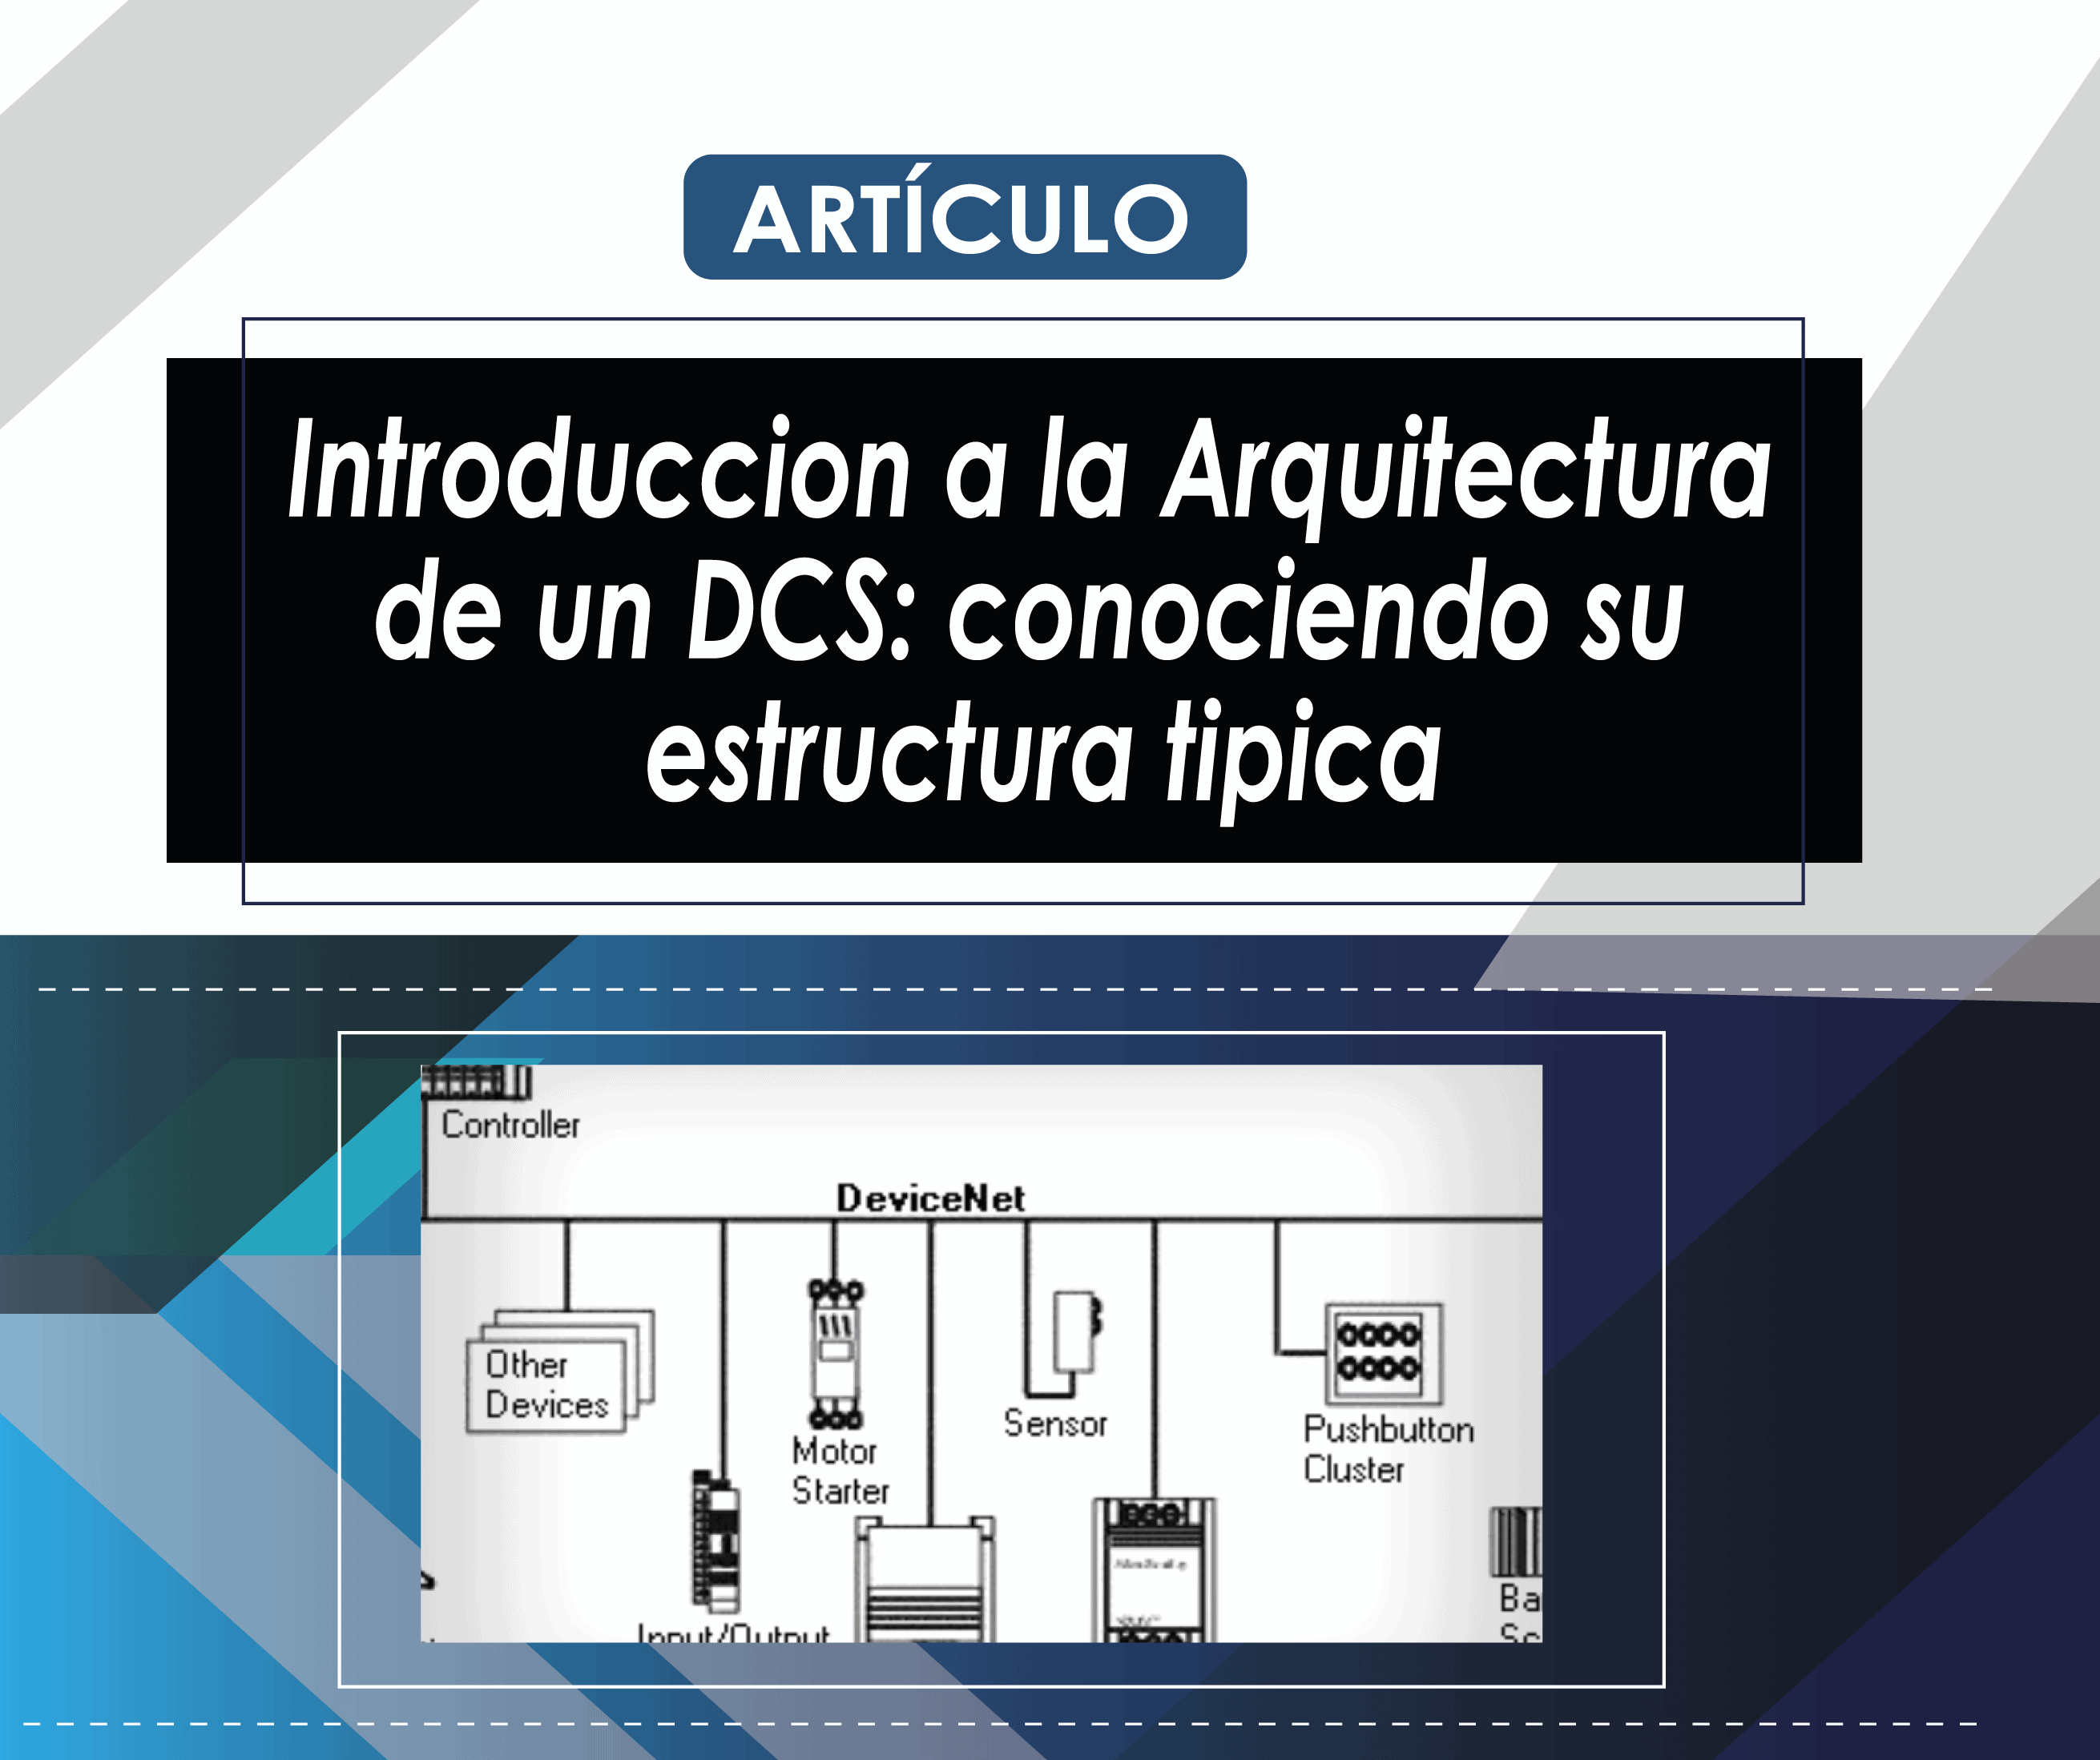 ARTICULO

Introduccion a la Arquitectura
de un DCS: conociendo su
estructura tipica